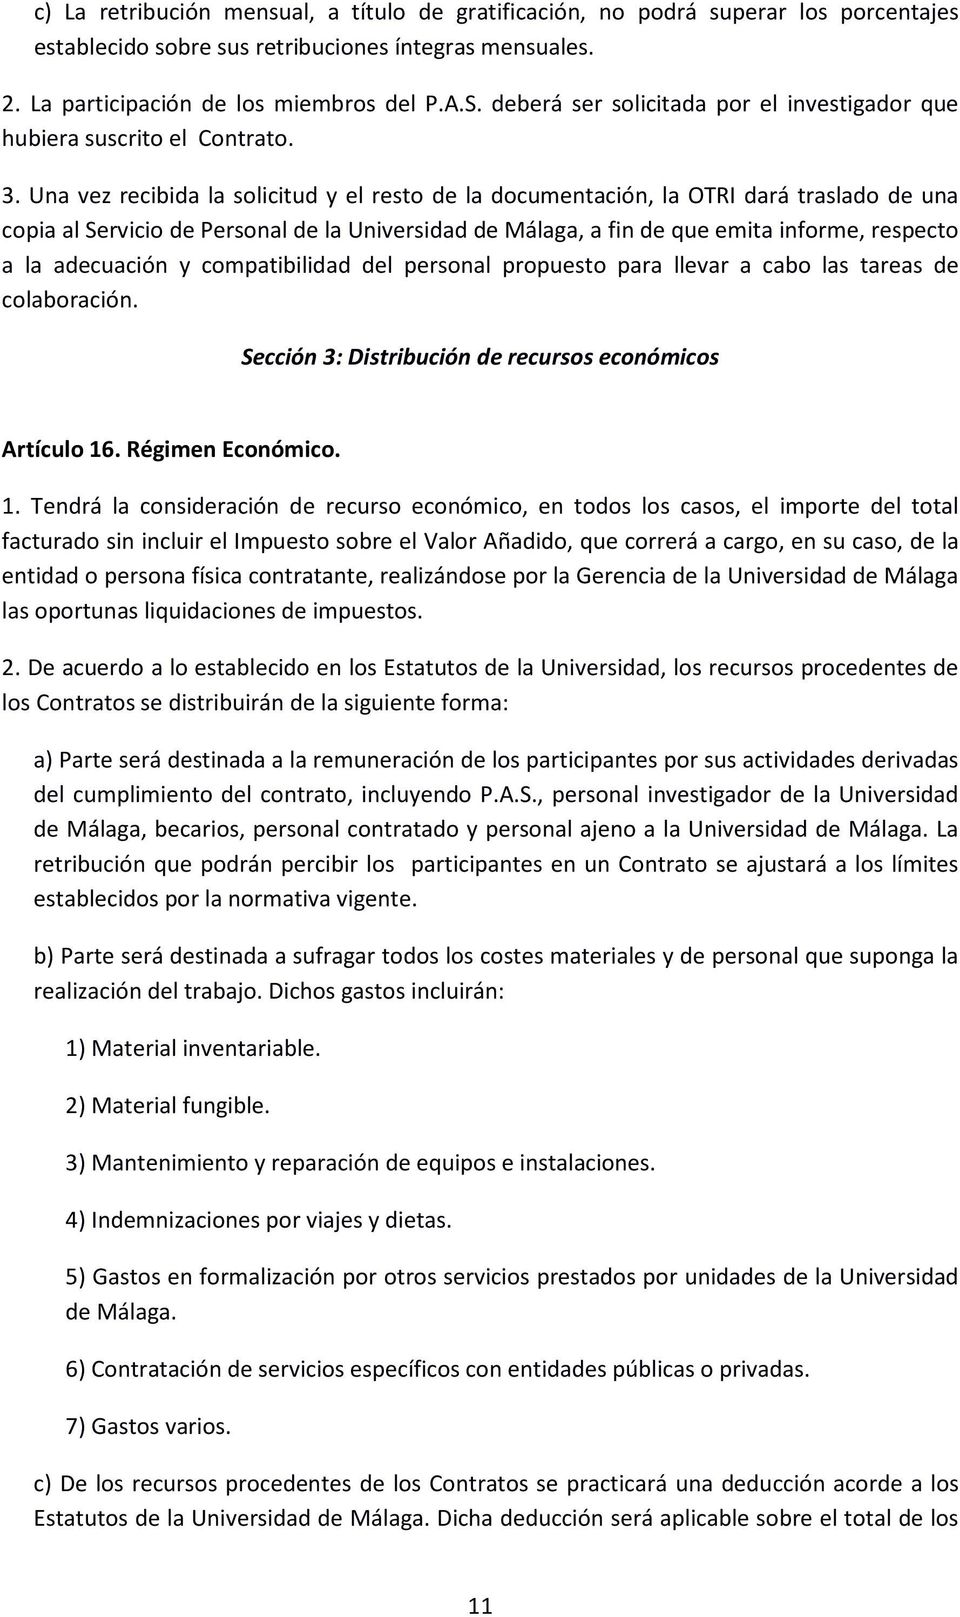 Una vez recibida la solicitud y el resto de la documentación, la OTRI dará traslado de una copia al Servicio de Personal de la Universidad de Málaga, a fin de que emita informe, respecto a la